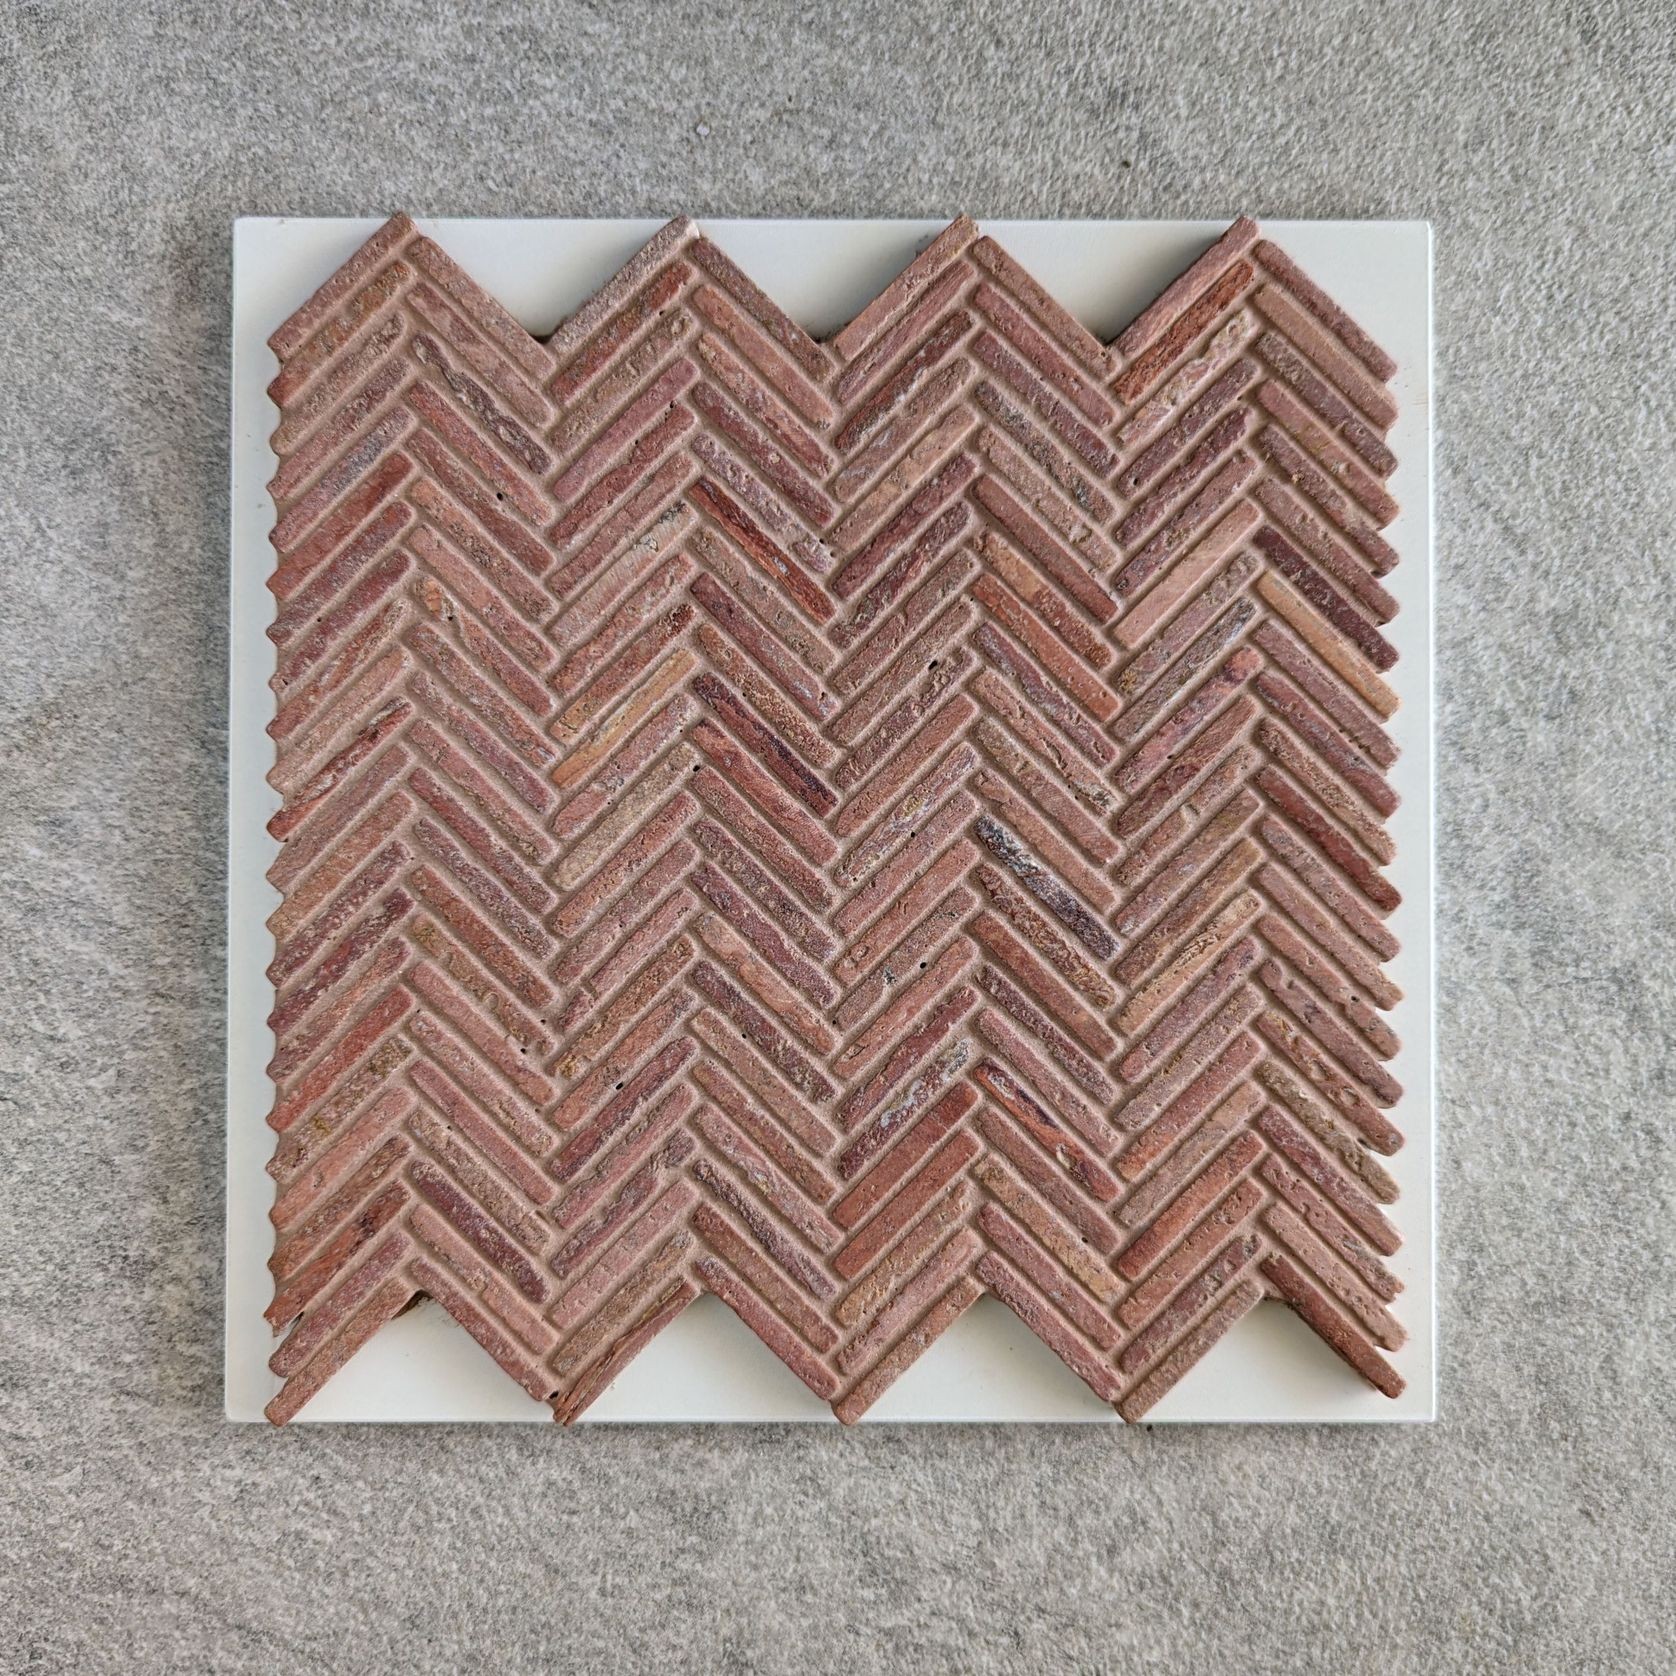 Herringbone Weave Mosaic - Rosso Travertino gallery detail image